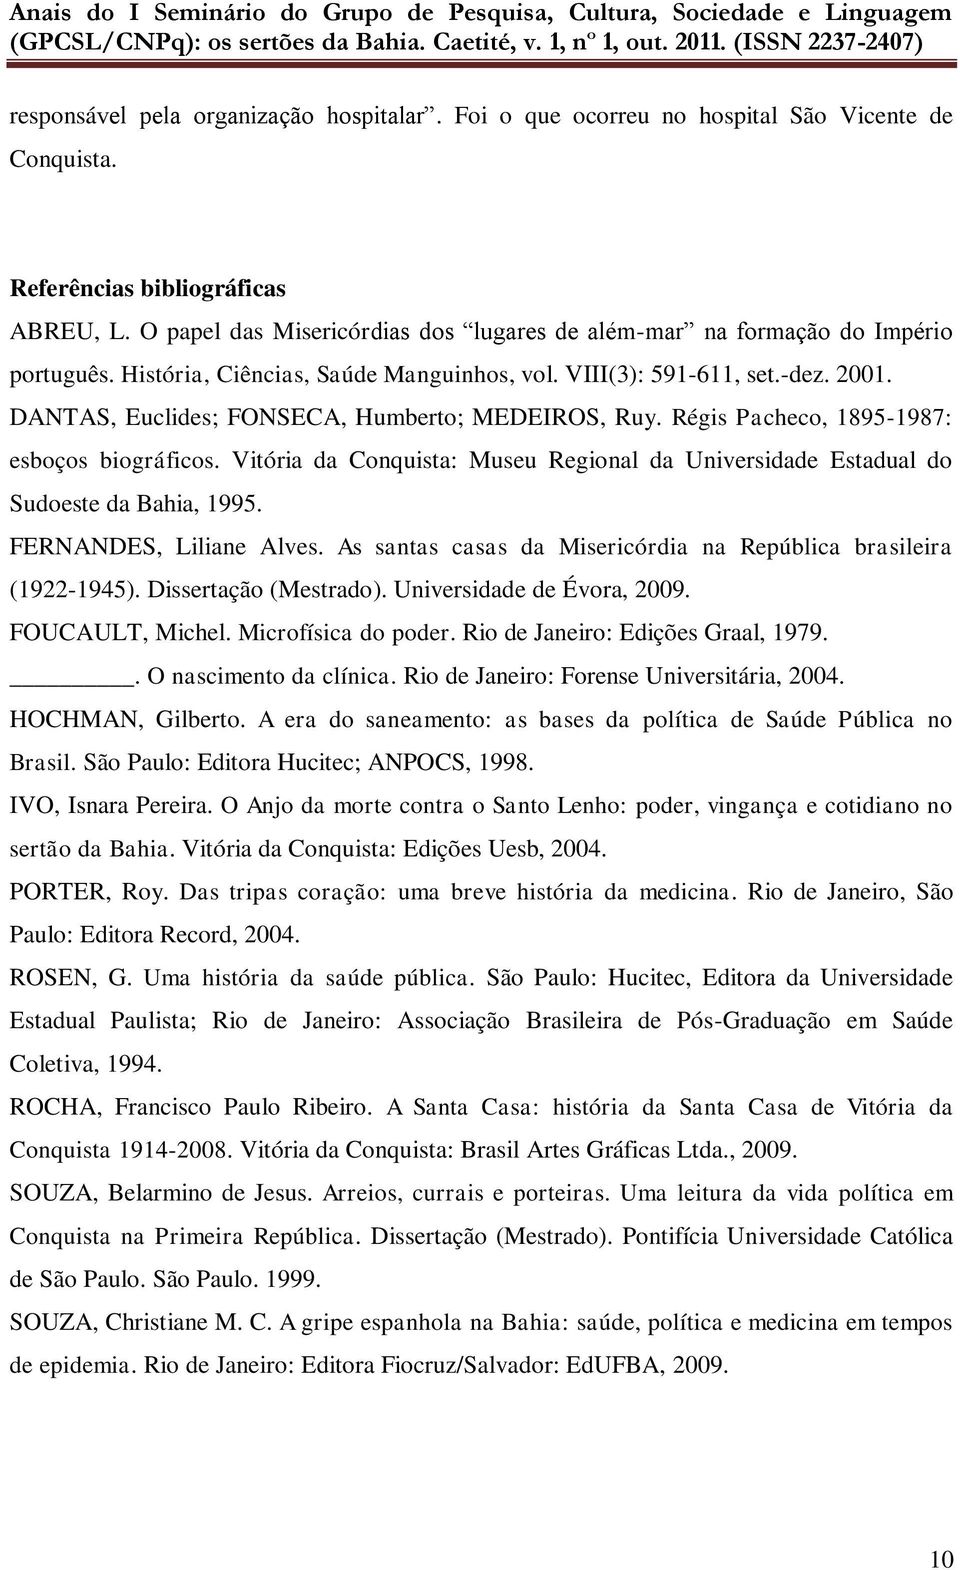 DANTAS, Euclides; FONSECA, Humberto; MEDEIROS, Ruy. Régis Pacheco, 1895-1987: esboços biográficos. Vitória da Conquista: Museu Regional da Universidade Estadual do Sudoeste da Bahia, 1995.